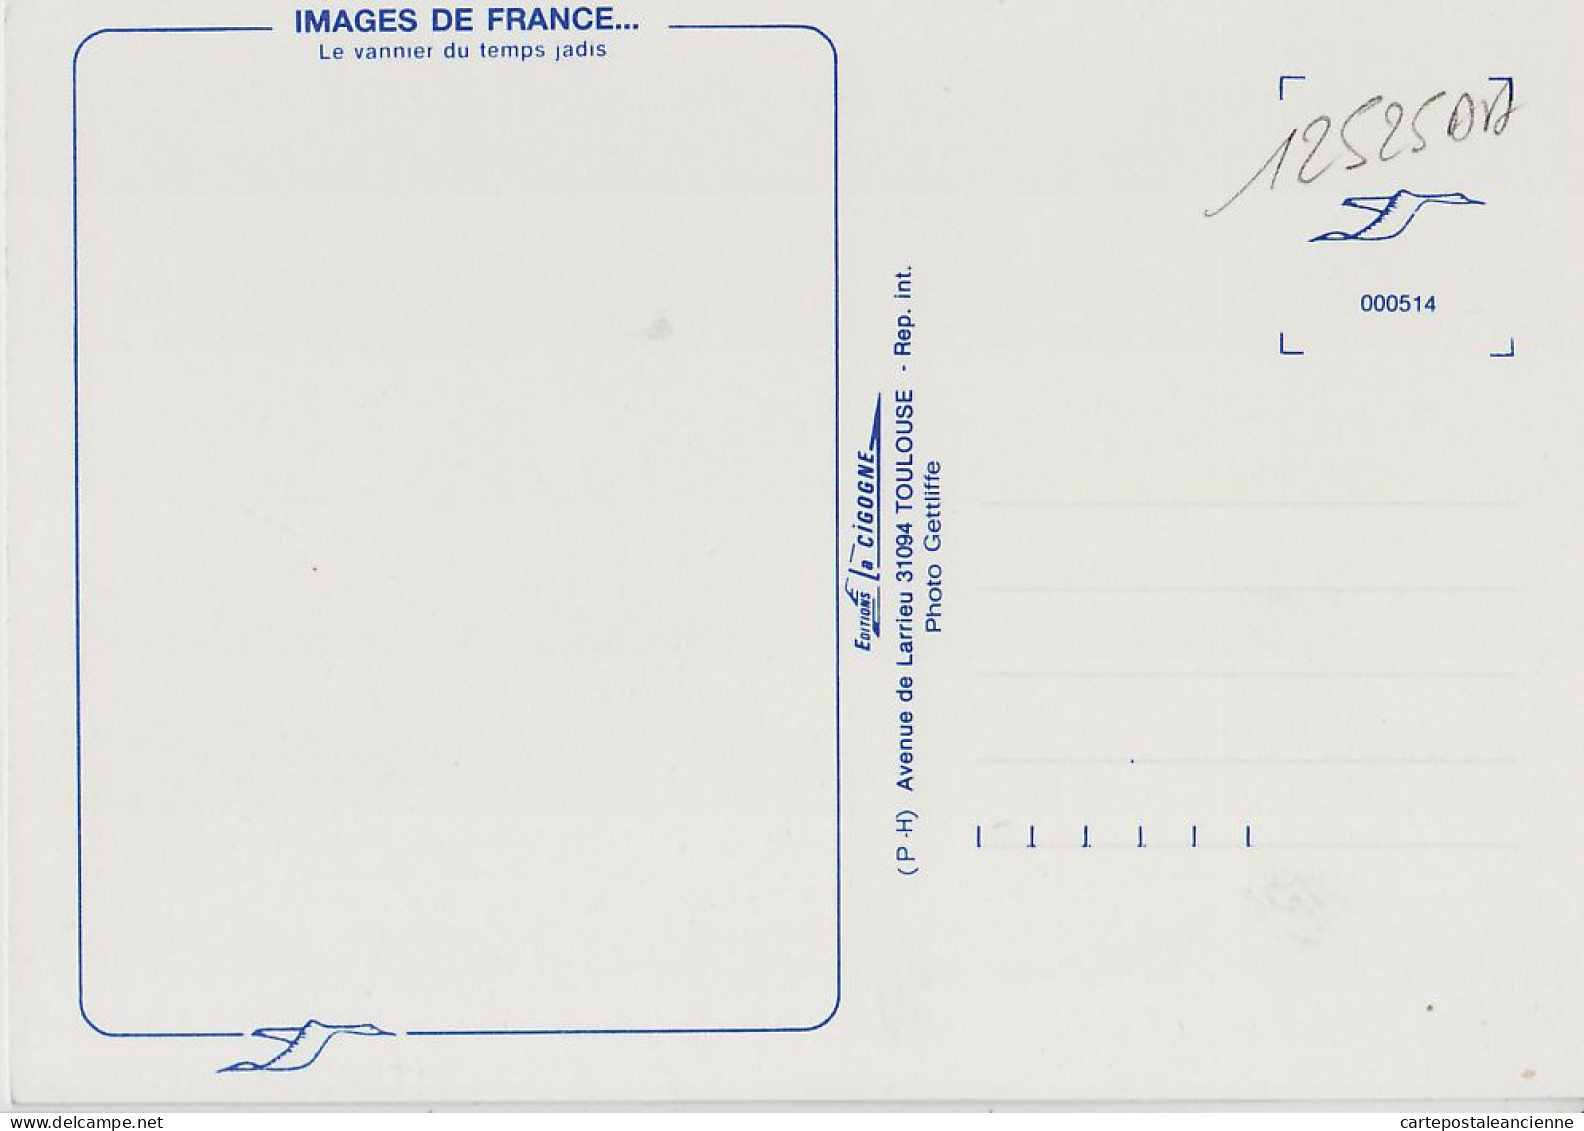 05451 / Midi-Pyrénées Le VANNIER Du Temps Jadis Artisanat Metier 1980s- IRIS CIGOGNE Toulouse Cpagr - Bauern